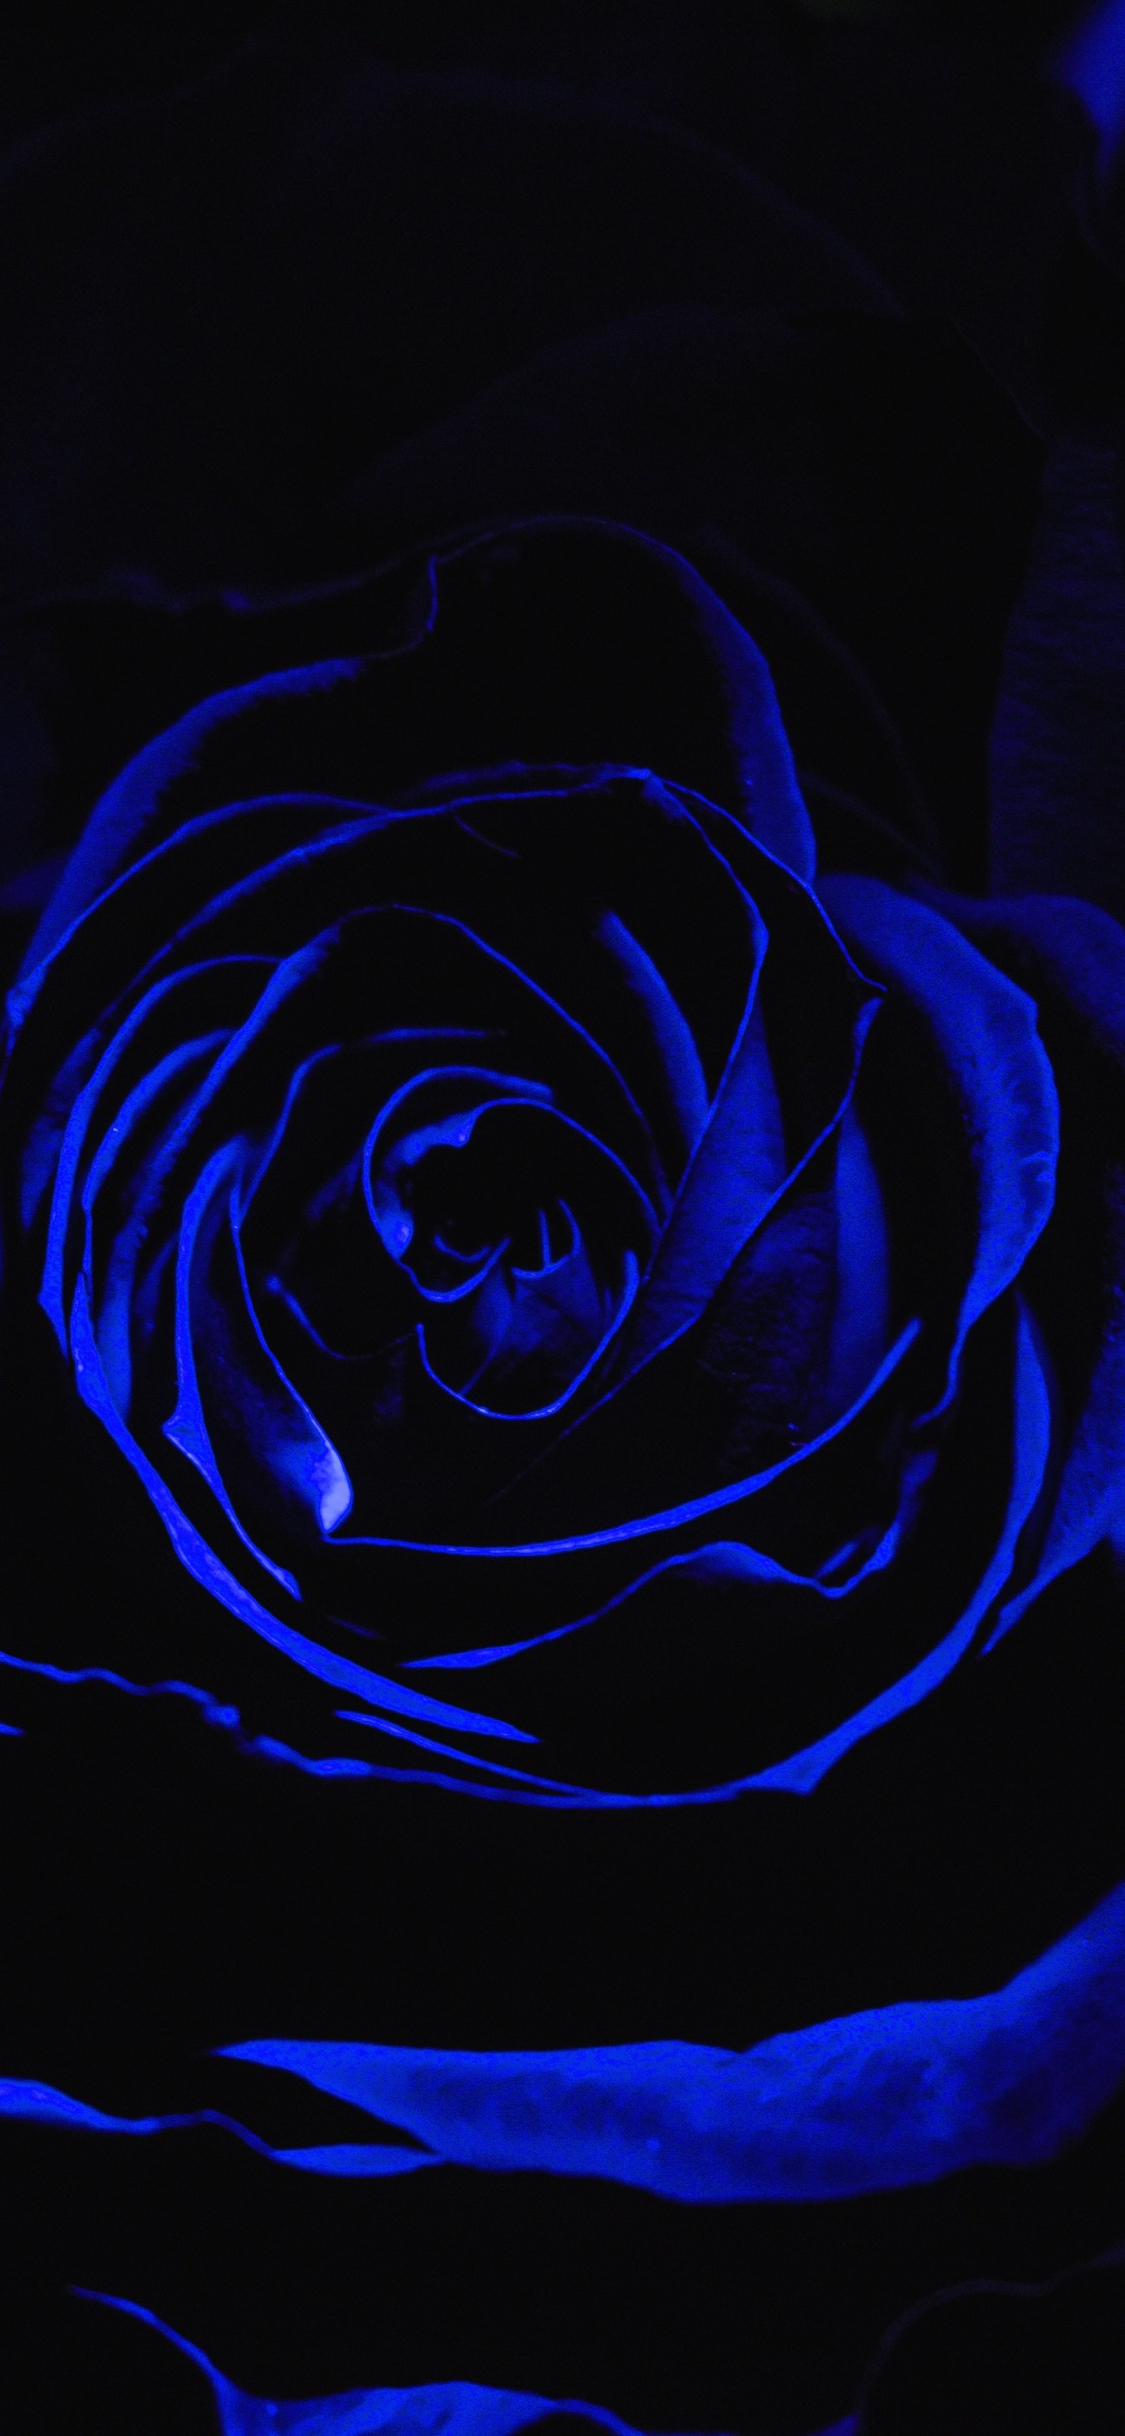 Blue Rose Wallpaper HD  PixelsTalkNet